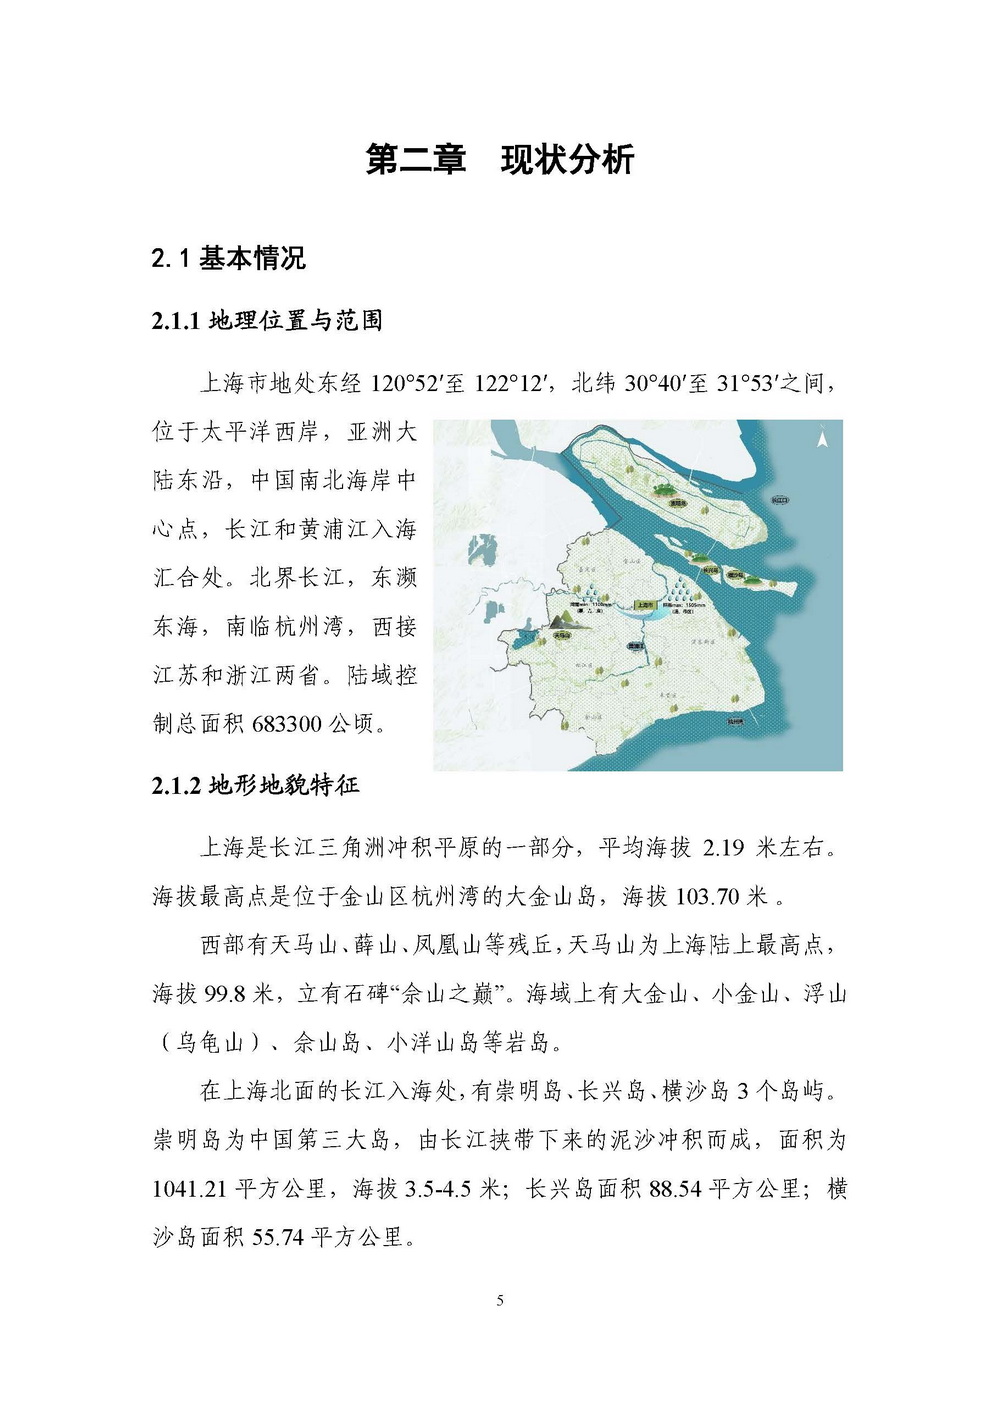 上海市森林和林地保护利用规划文本 公开稿 附图_页面_08.jpg